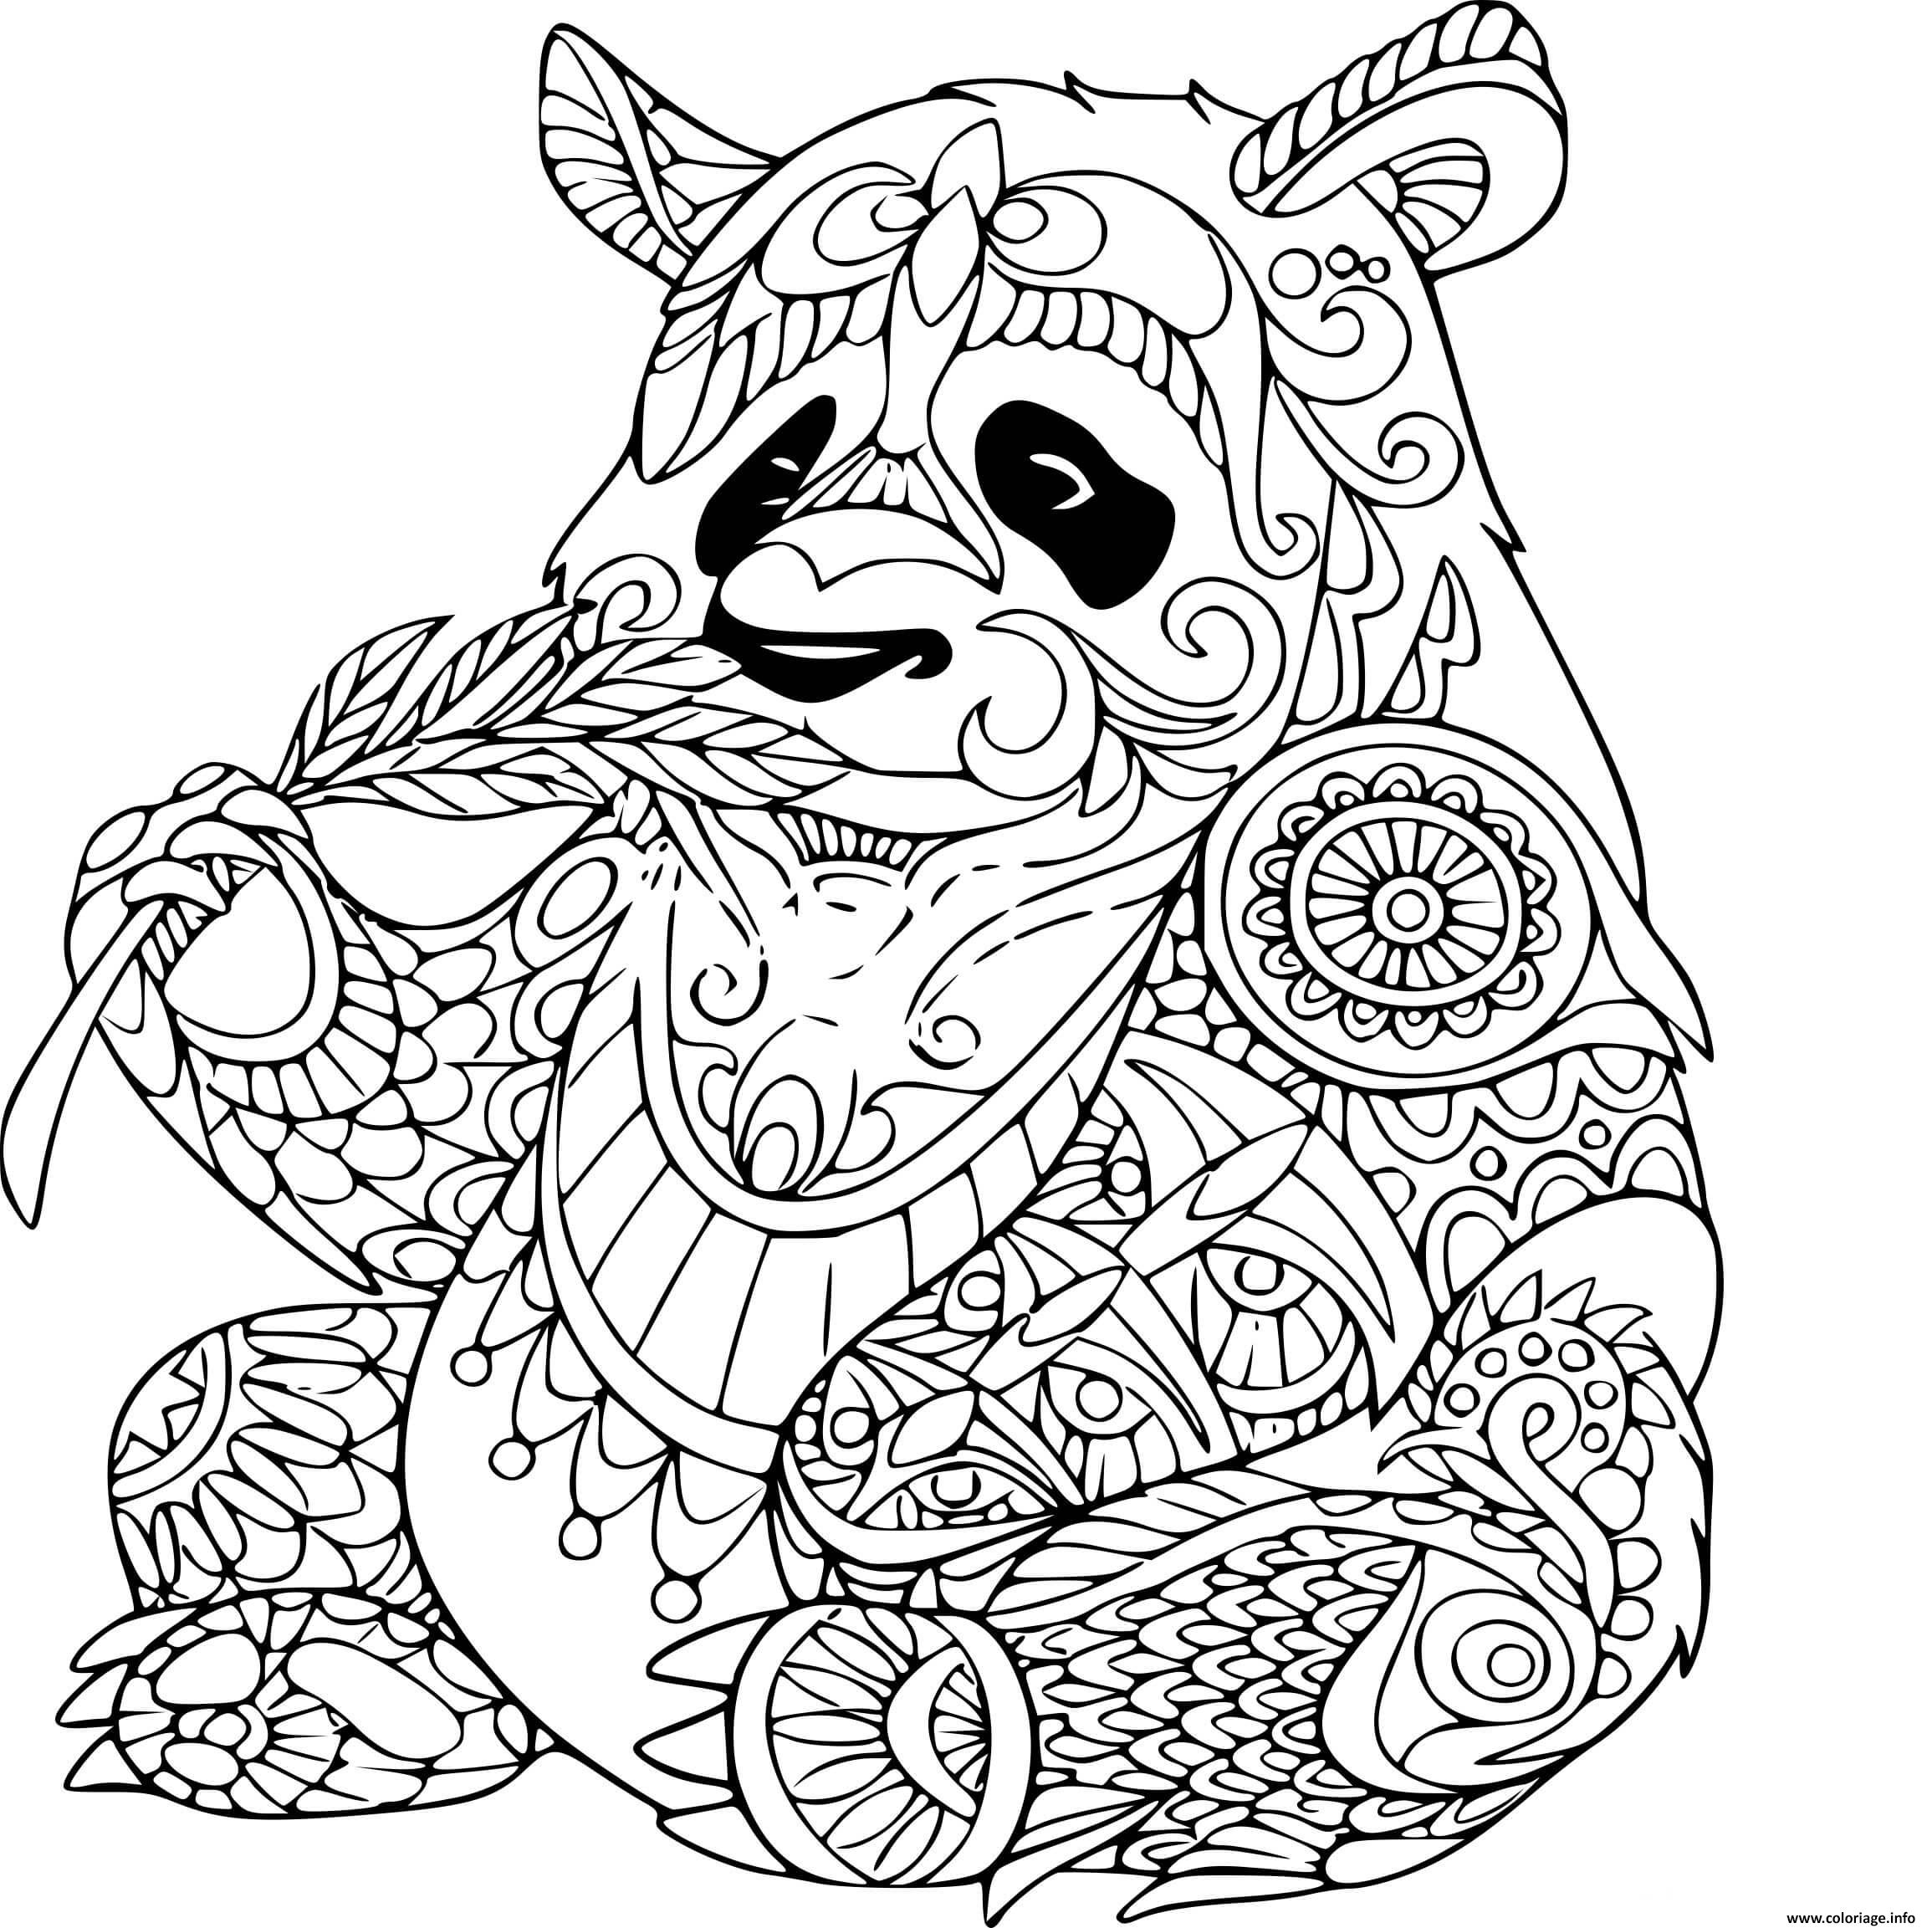 Dessin panda adulte zentangle Coloriage Gratuit à Imprimer